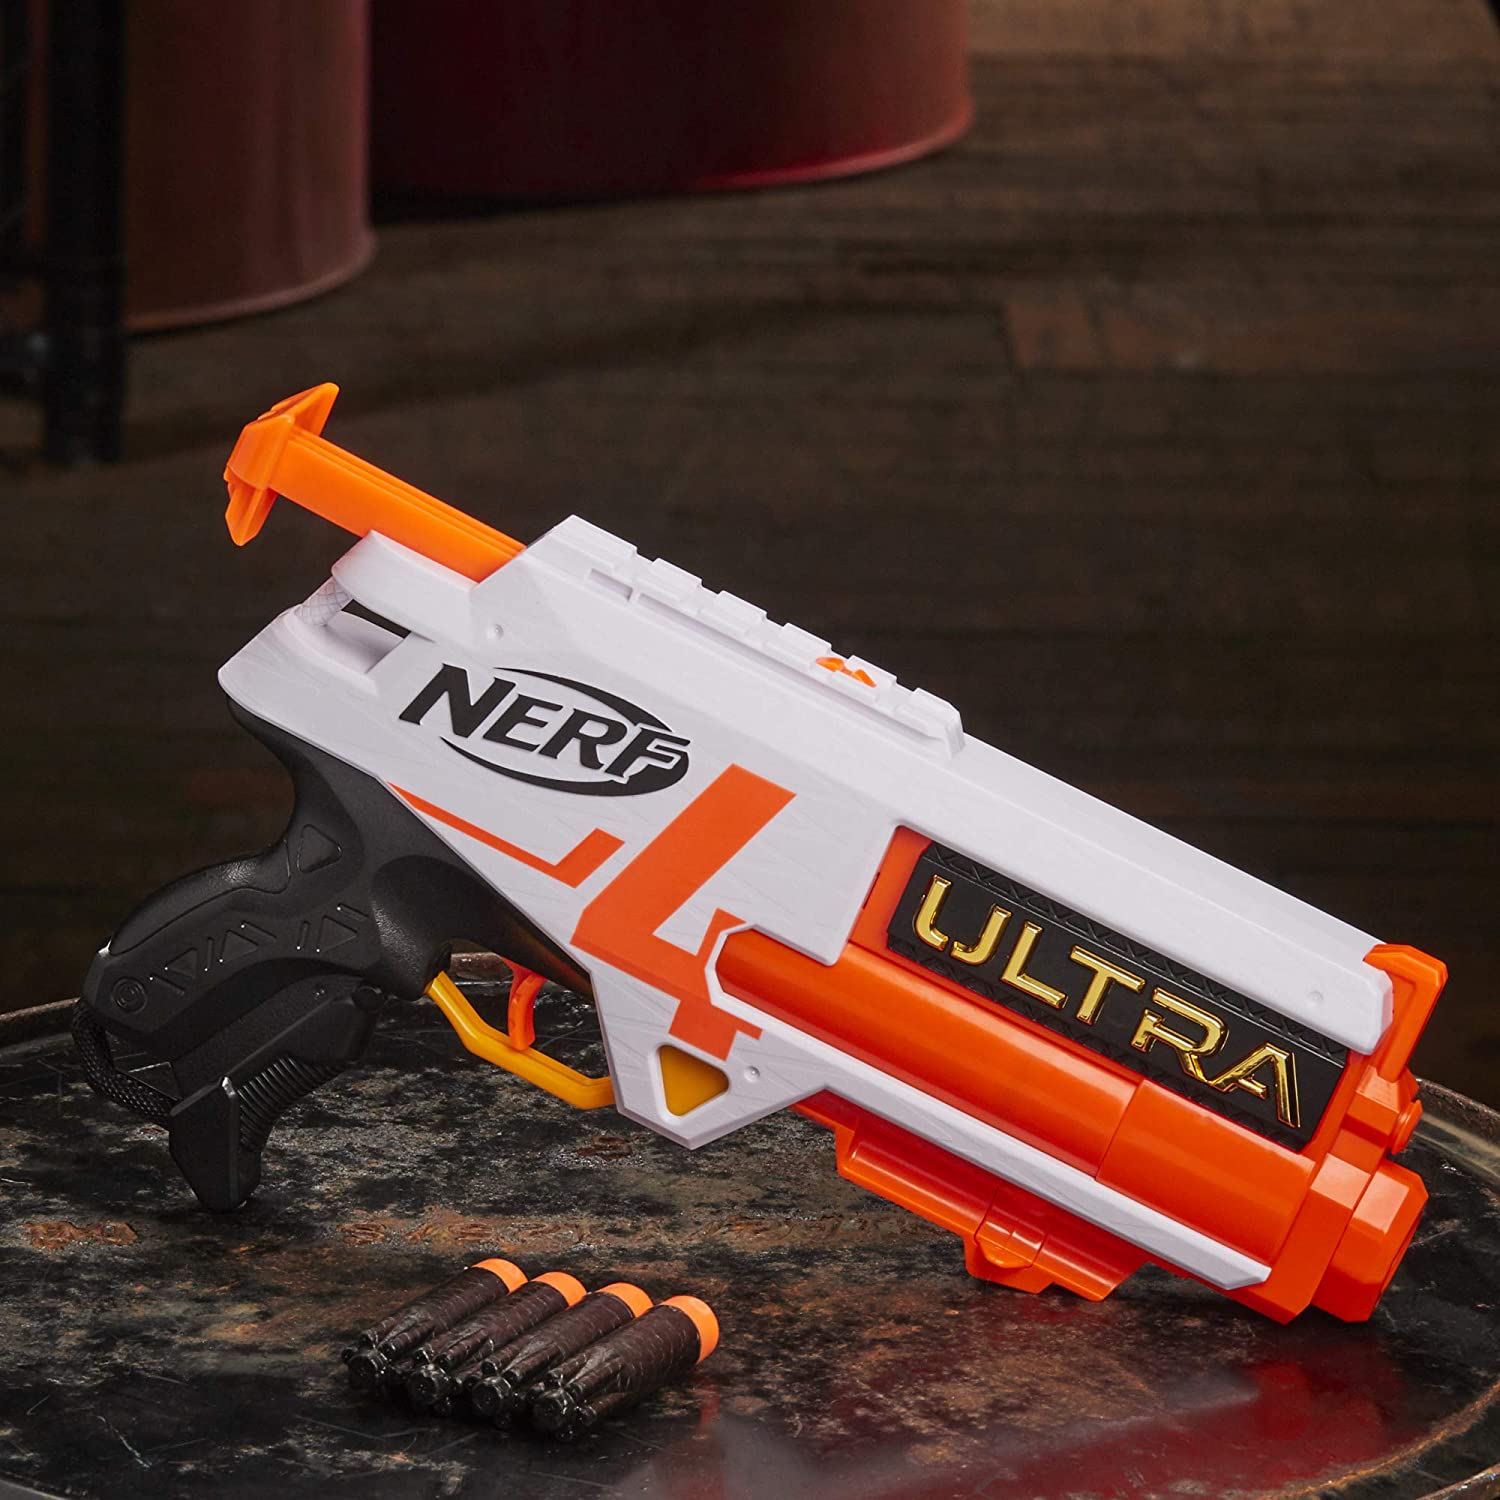 Nerf Ultra - Lançador One, NERF